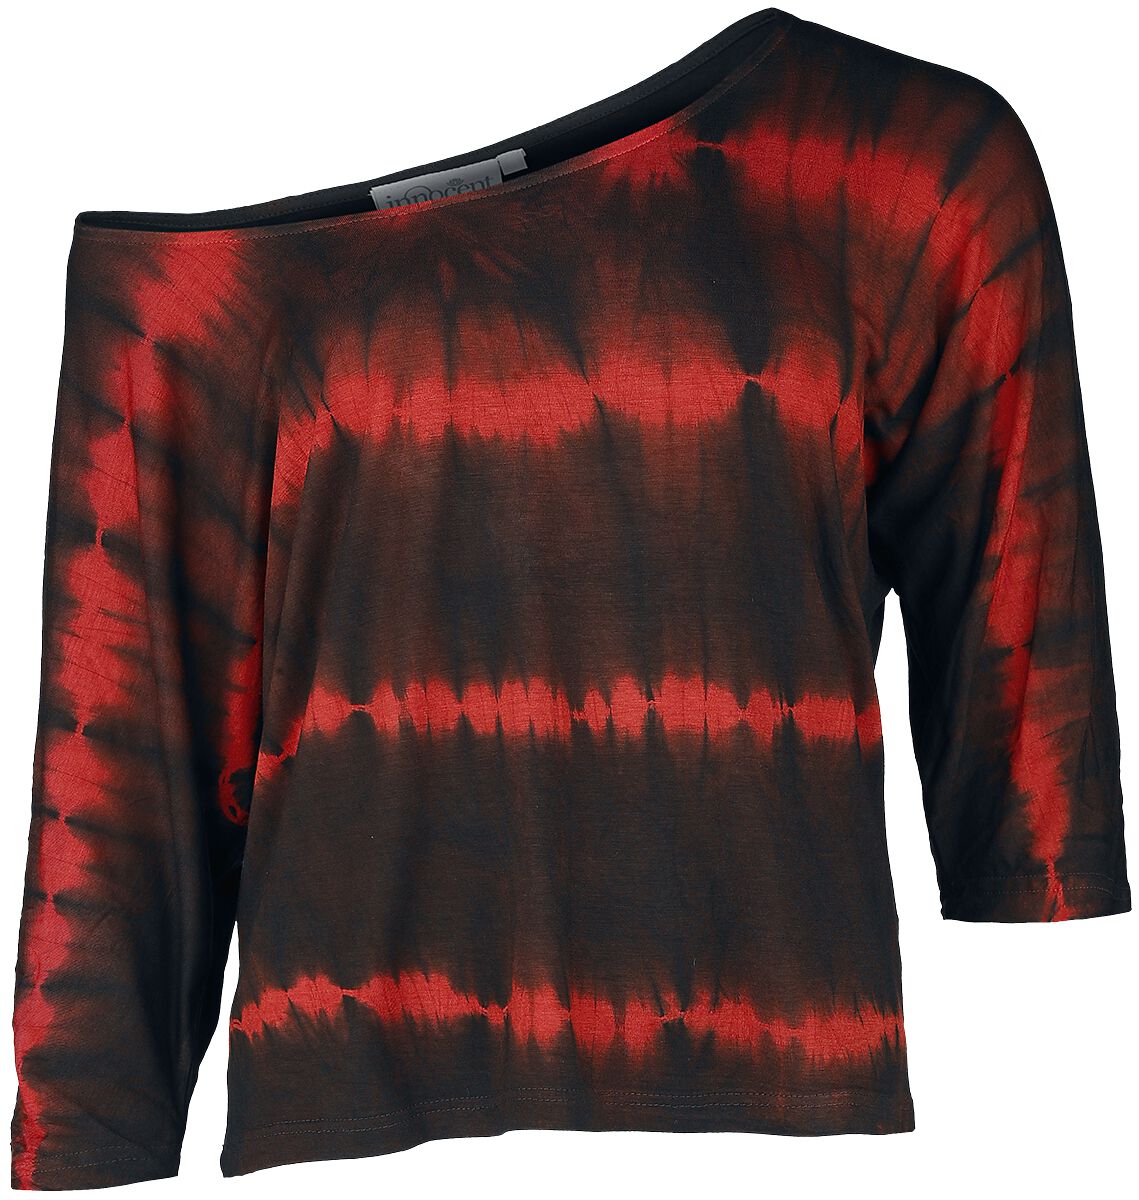 Innocent - Gothic Langarmshirt - Solana Top - XS bis 4XL - für Damen - Größe 3XL - schwarz/rot von innocent